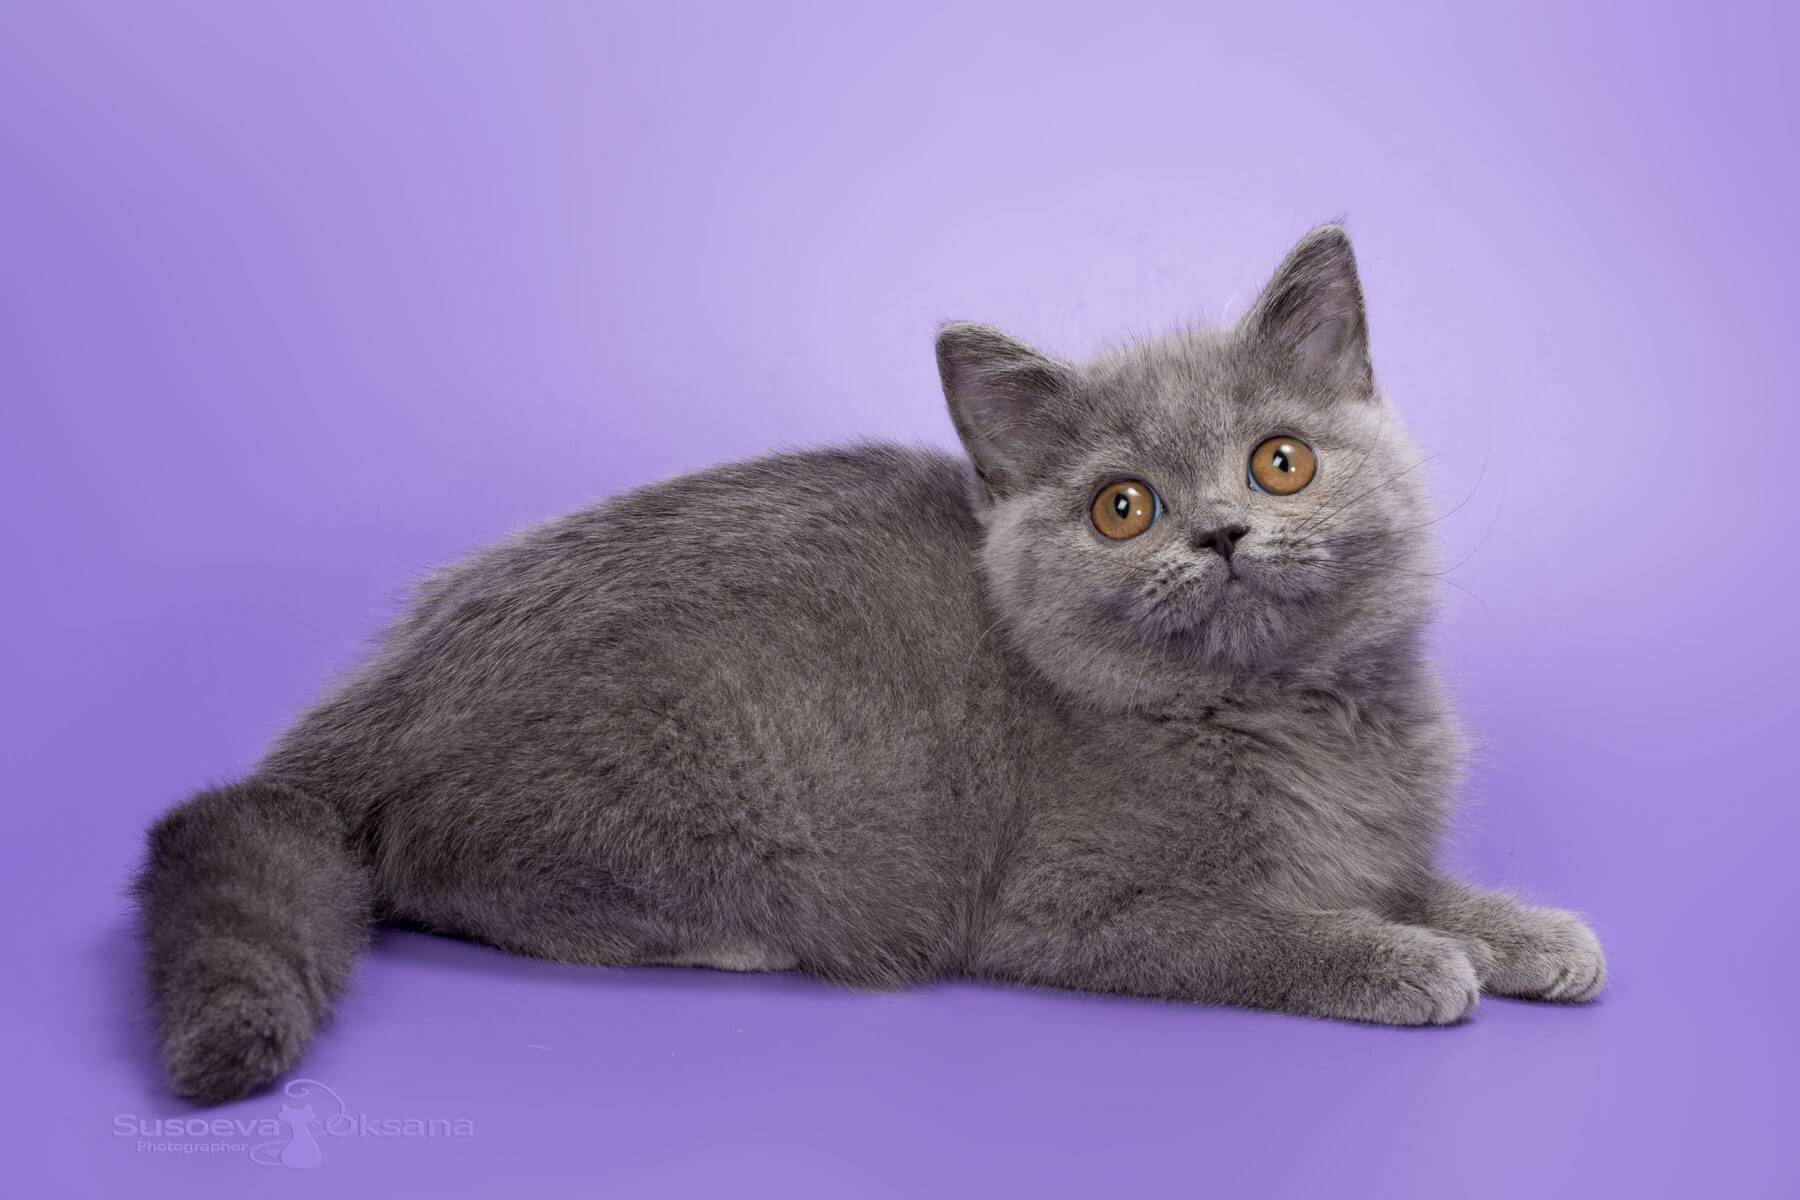 Британская голубая кошка, фото, цена, купить в Минске голубую британскую кошку Ida